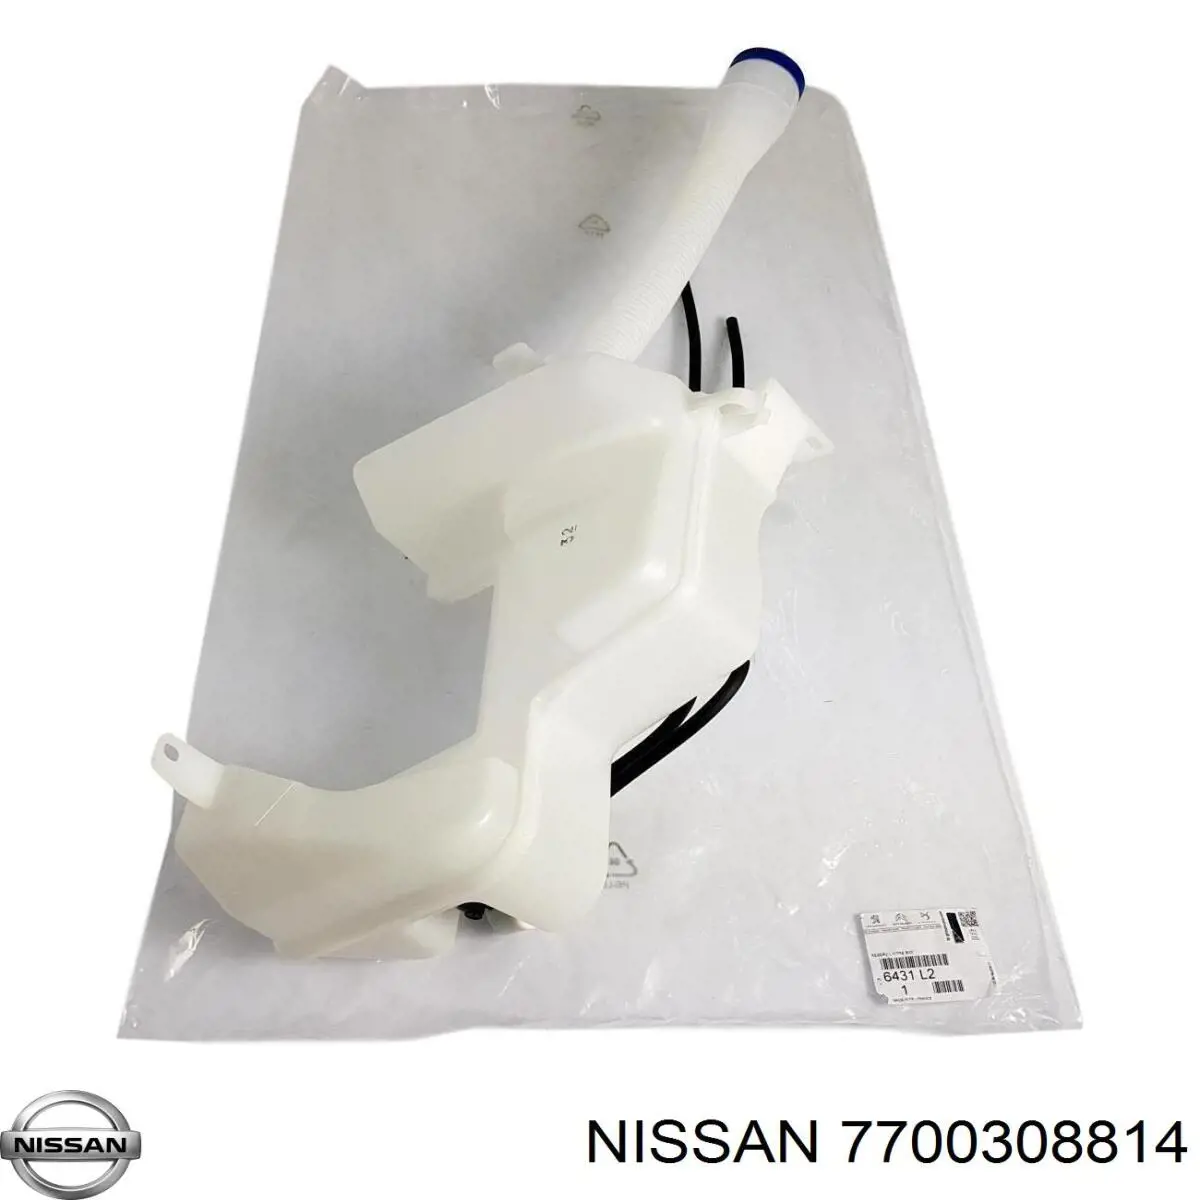 7700308814 Nissan depósito de agua del limpiaparabrisas